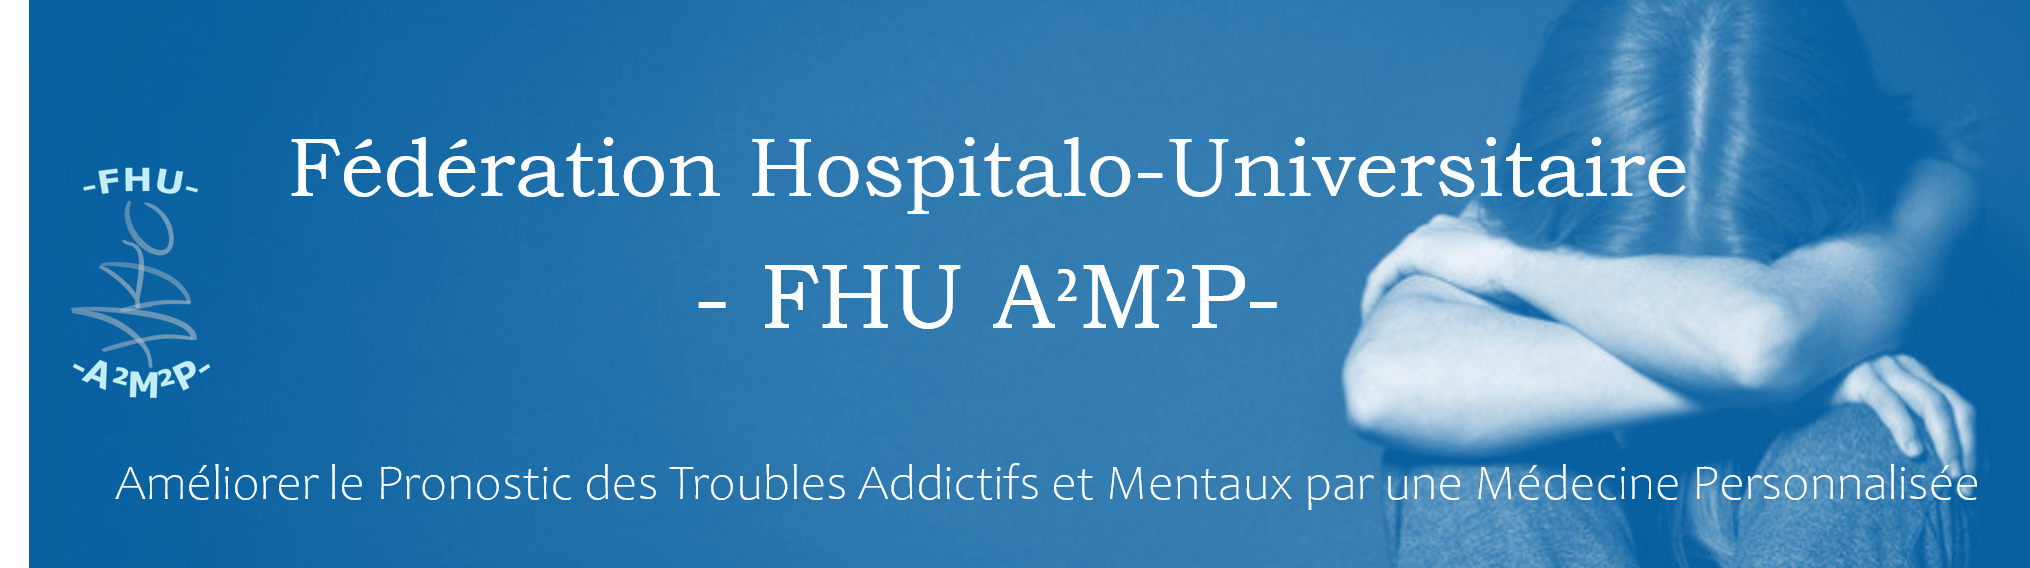 Fédération Hospitalière Universitaire – A2M2P – Améliorer le pronostic des troubles Addictifs et Mentaux par une Médecine Personnalisée